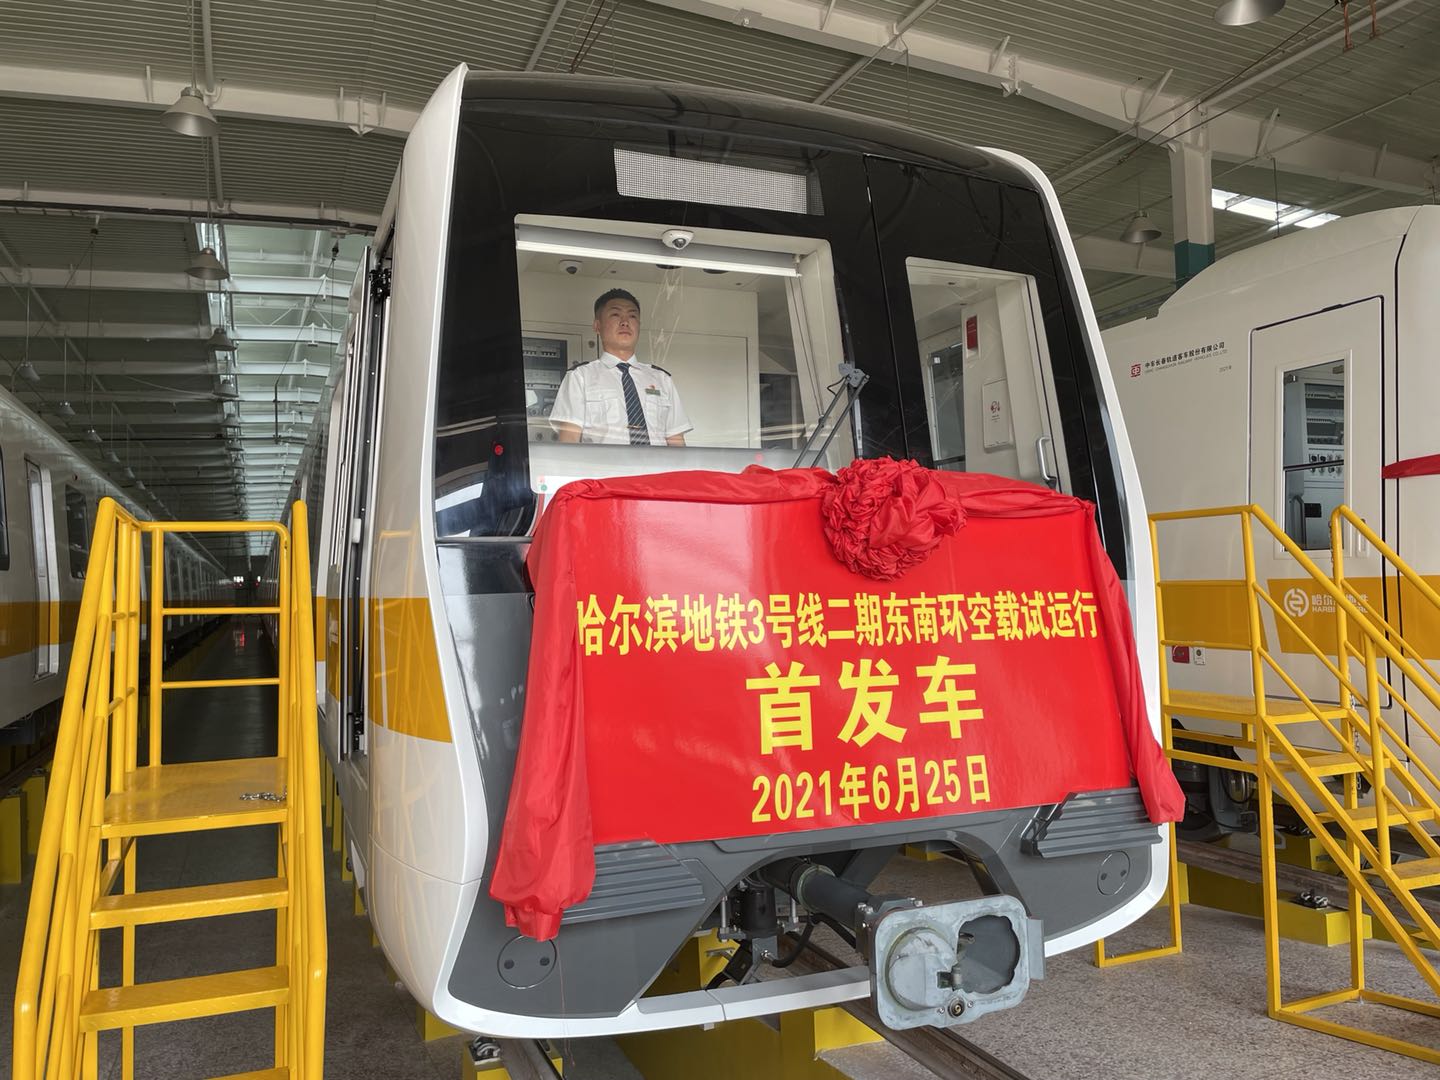 龙江新闻哈尔滨地铁3号线负责人邹永志告诉记者,3号线二期车型为铝